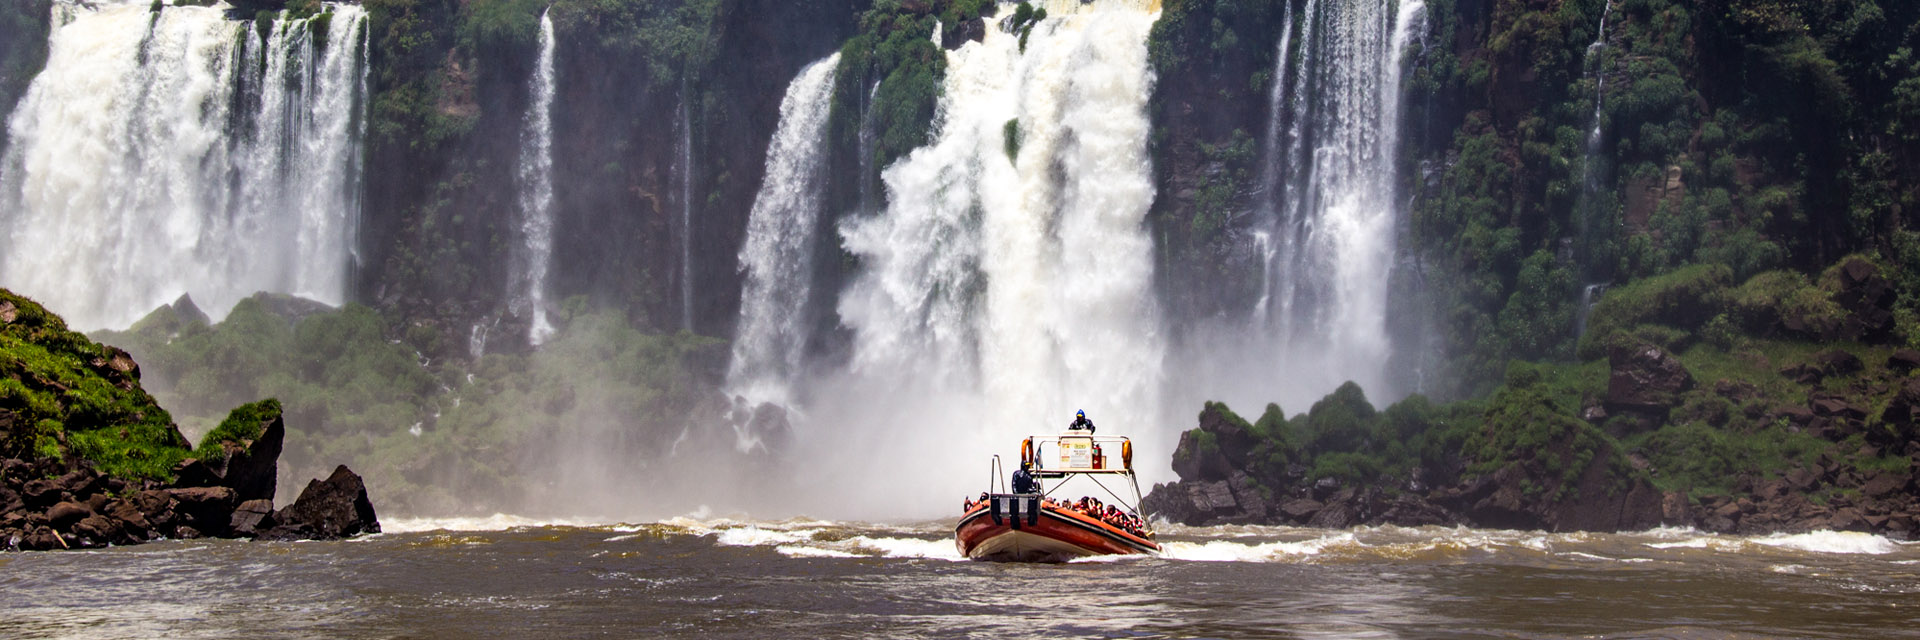 Precisa carro em Foz do Iguaçu?